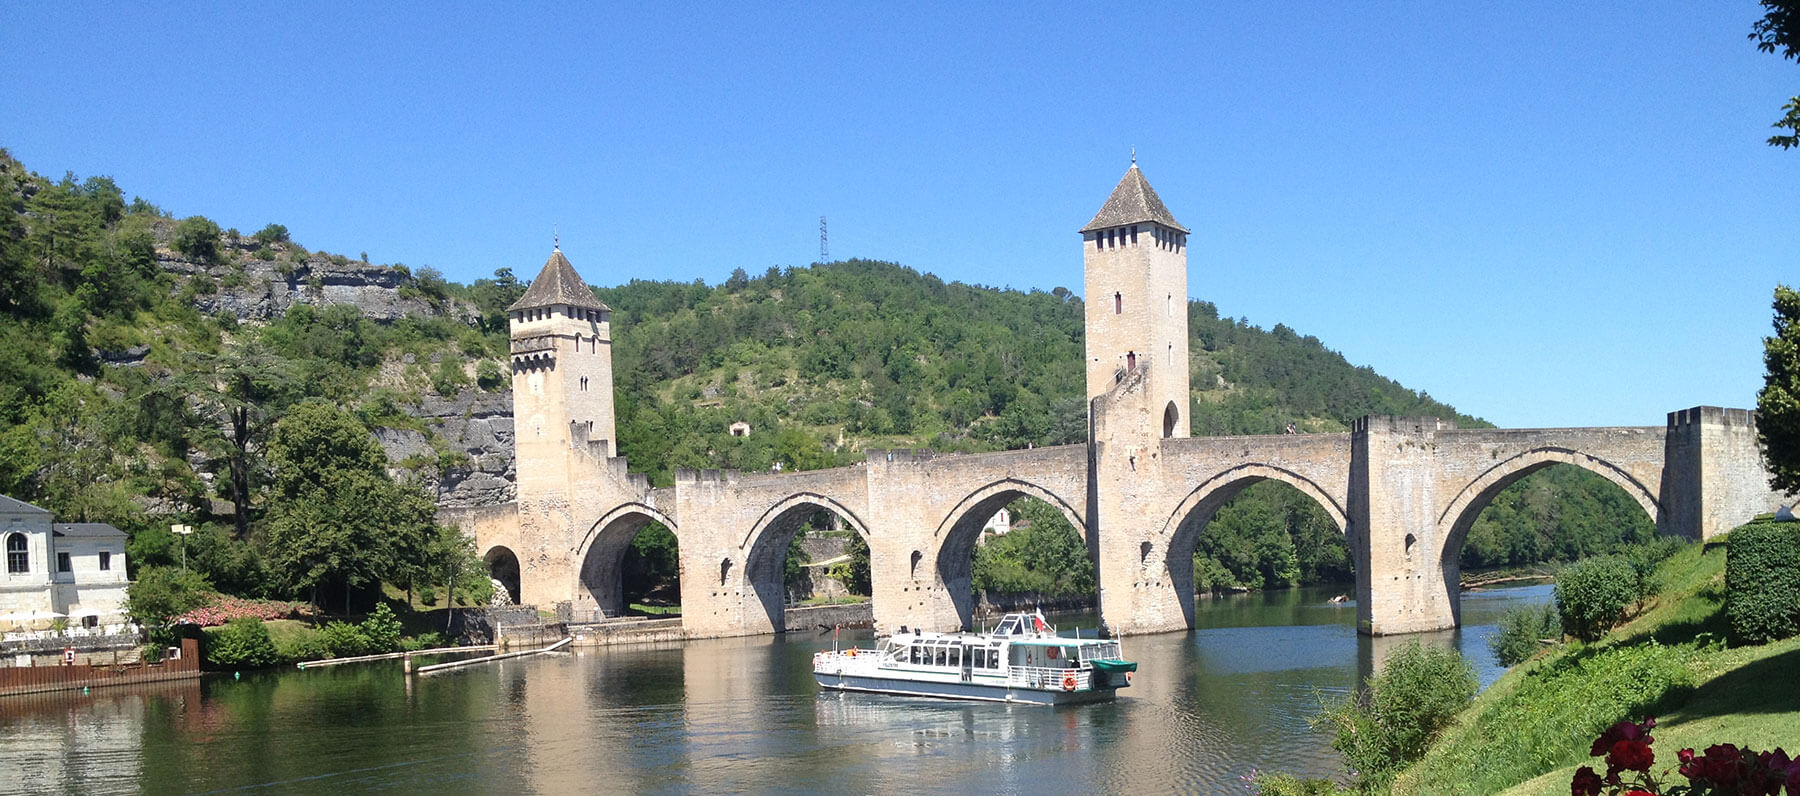 Valentré bridge(pont valentré) in Cahors